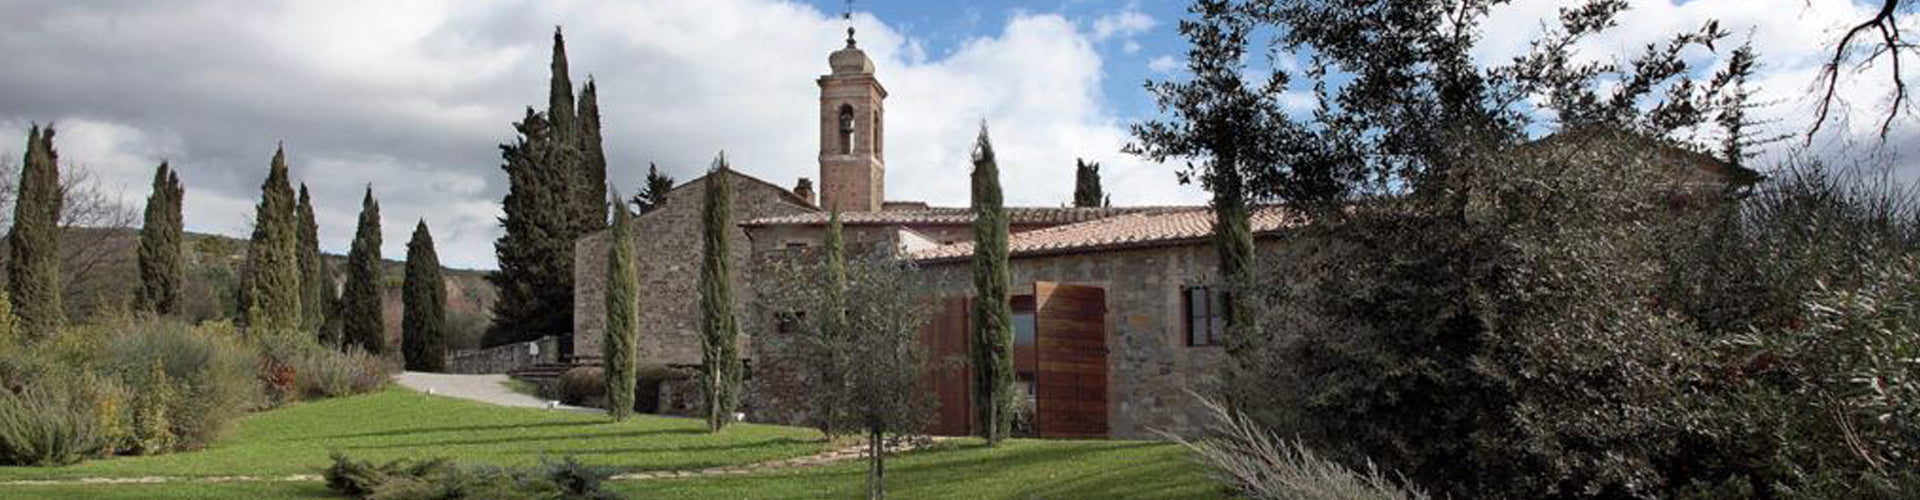 Gaja's Pieve Santa Restituta Estate in Montlacino, Tuscany